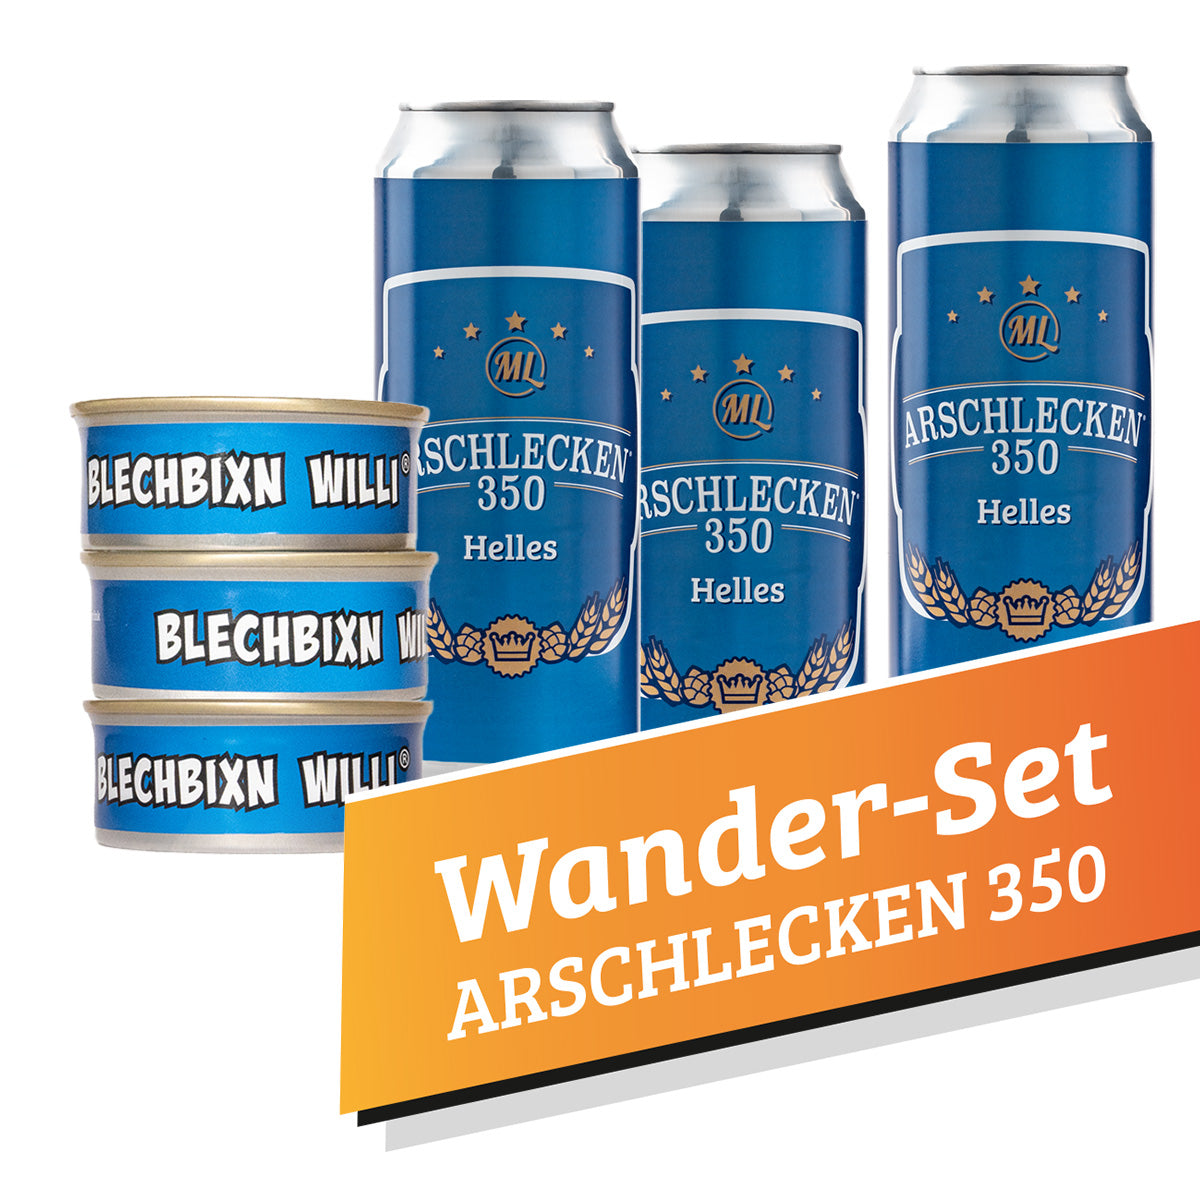 Wander-Set Arschlecken350 3x Dosen Willi mit 3 Dosen Arschlecken 350